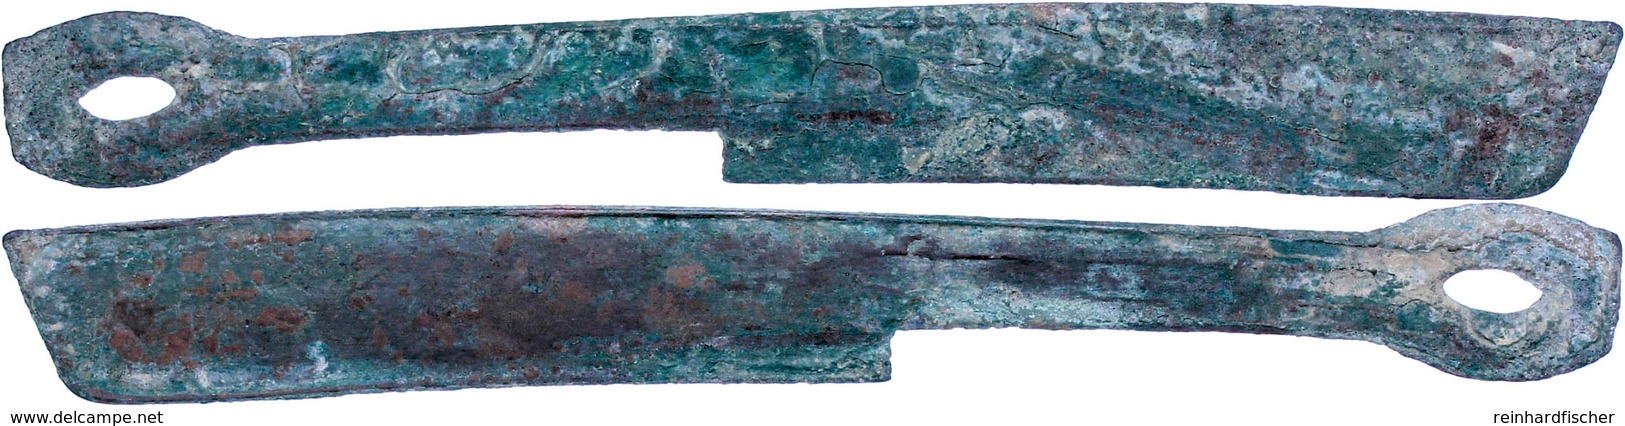 Zhou-Dynastie, 1122-220 V. Chr., Æ-Messergeld (10,81g), Sog. Strait Knive Money, 400-250 V. Chr., Vgl. Opitz S. 186, Sch - Chinesische Münzen